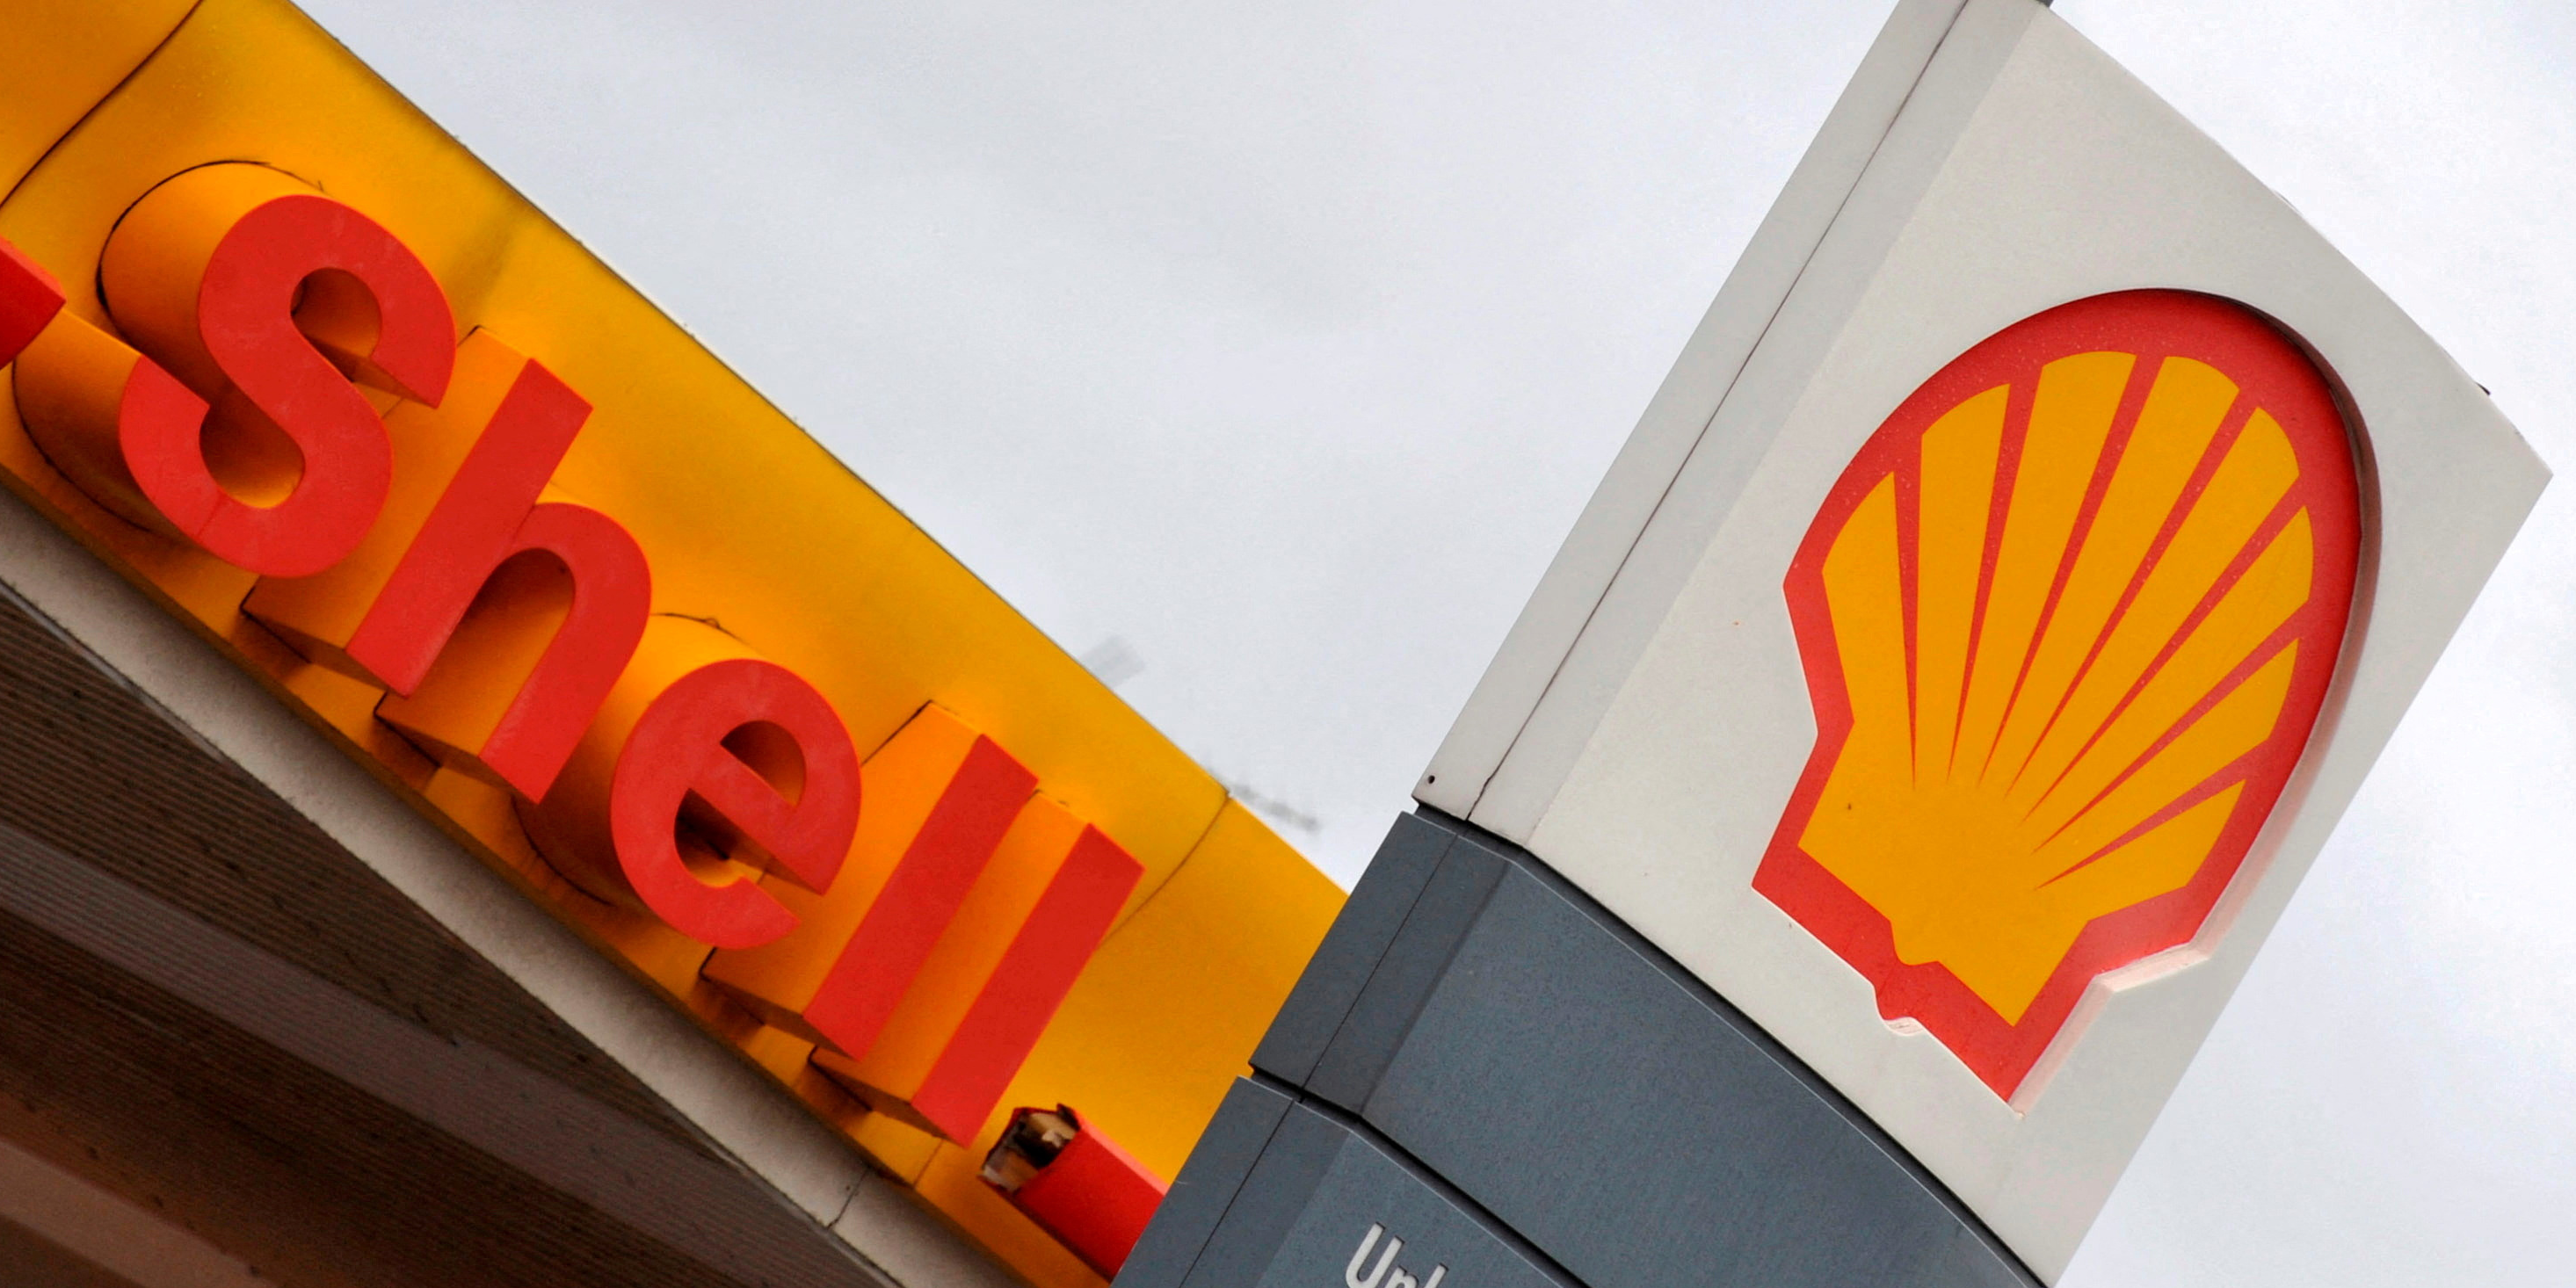 Les revenus gaziers de Shell attendus en forte baisse au deuxième trimestre